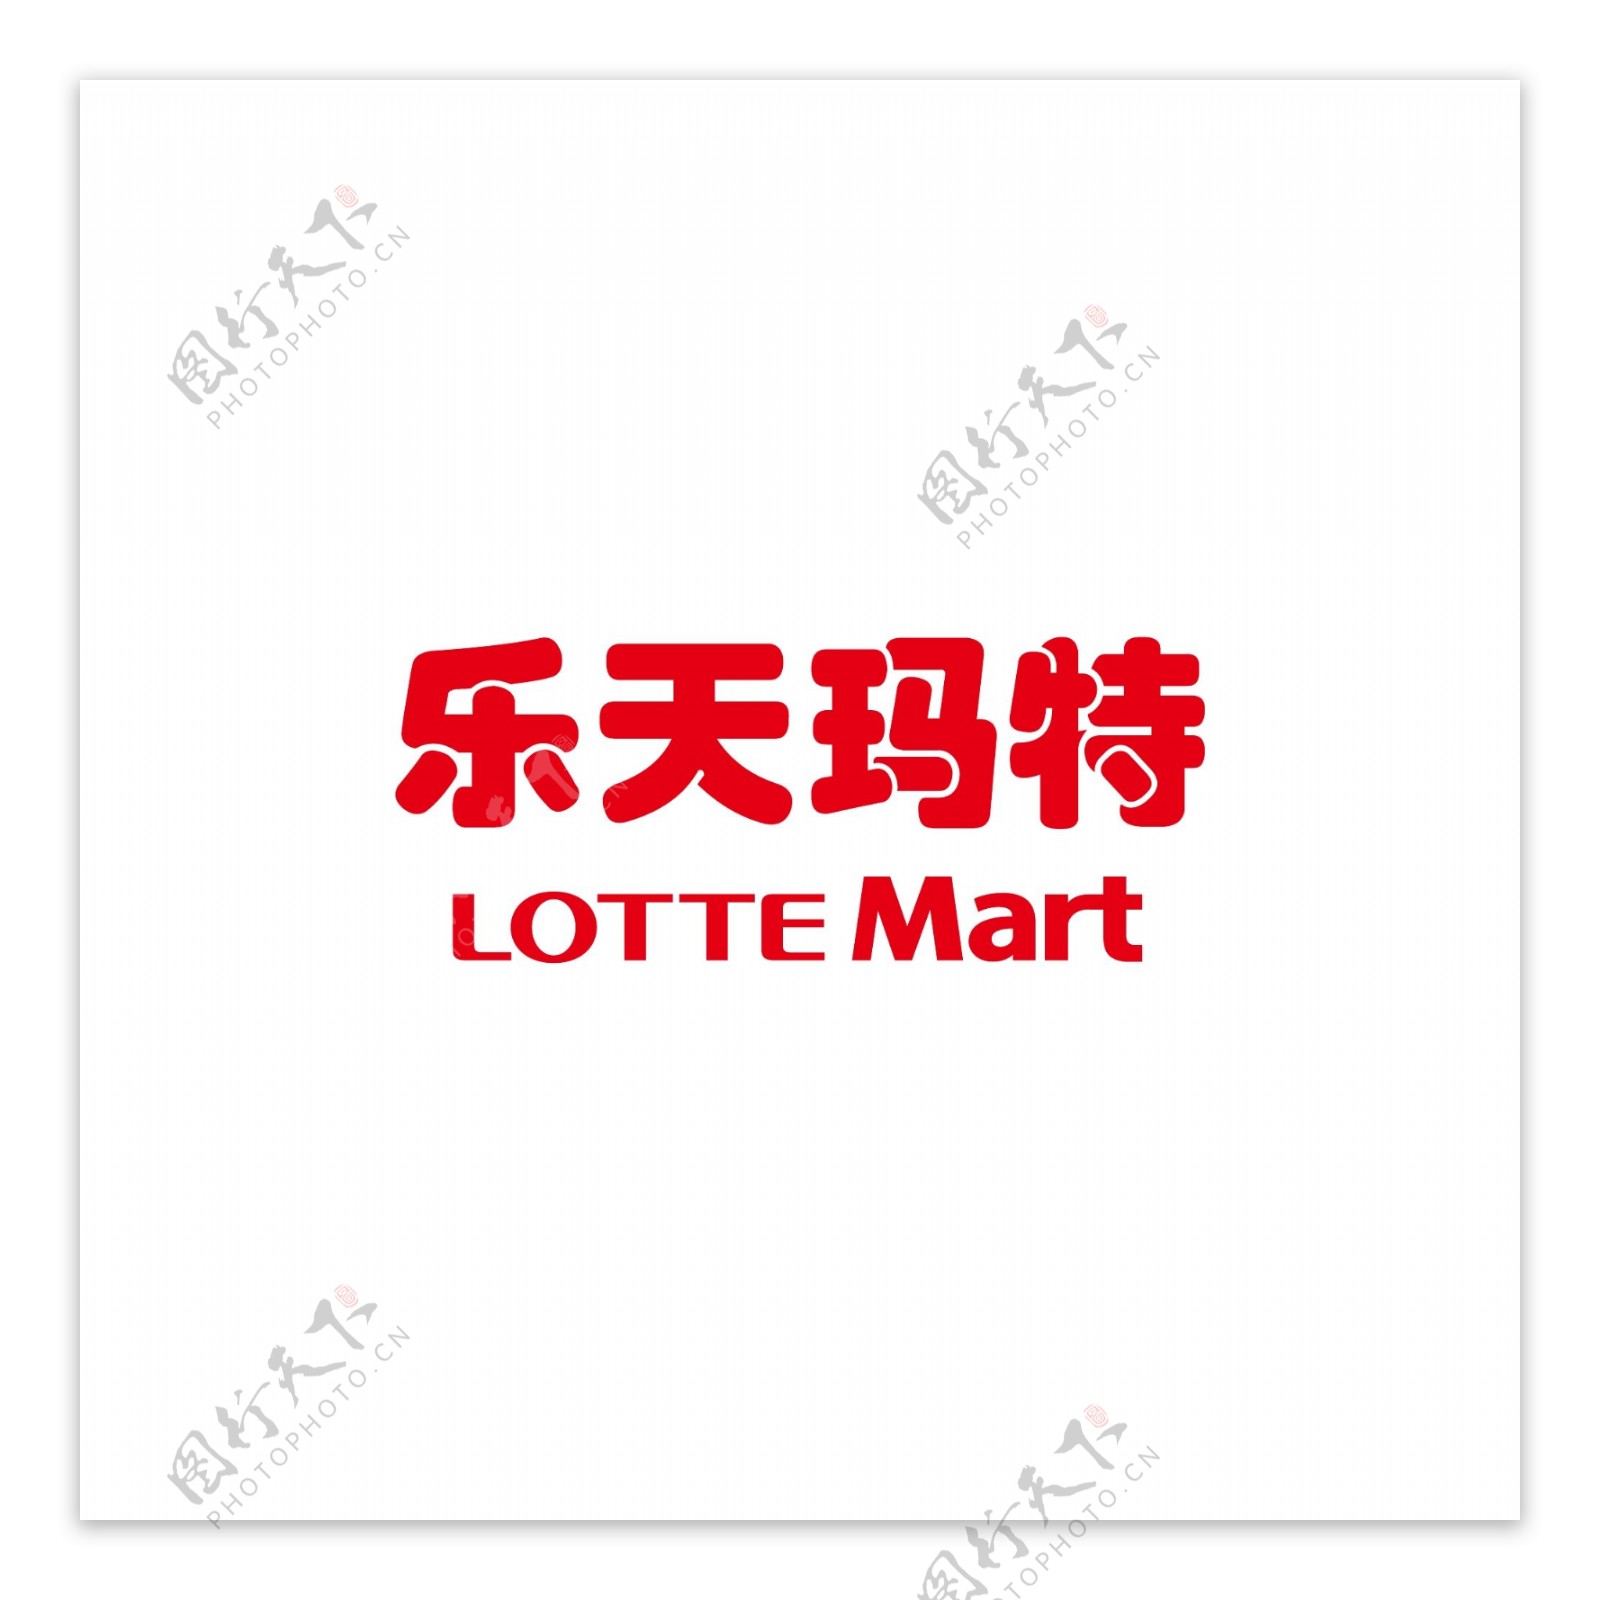 乐天玛特logo超市卖场便利店